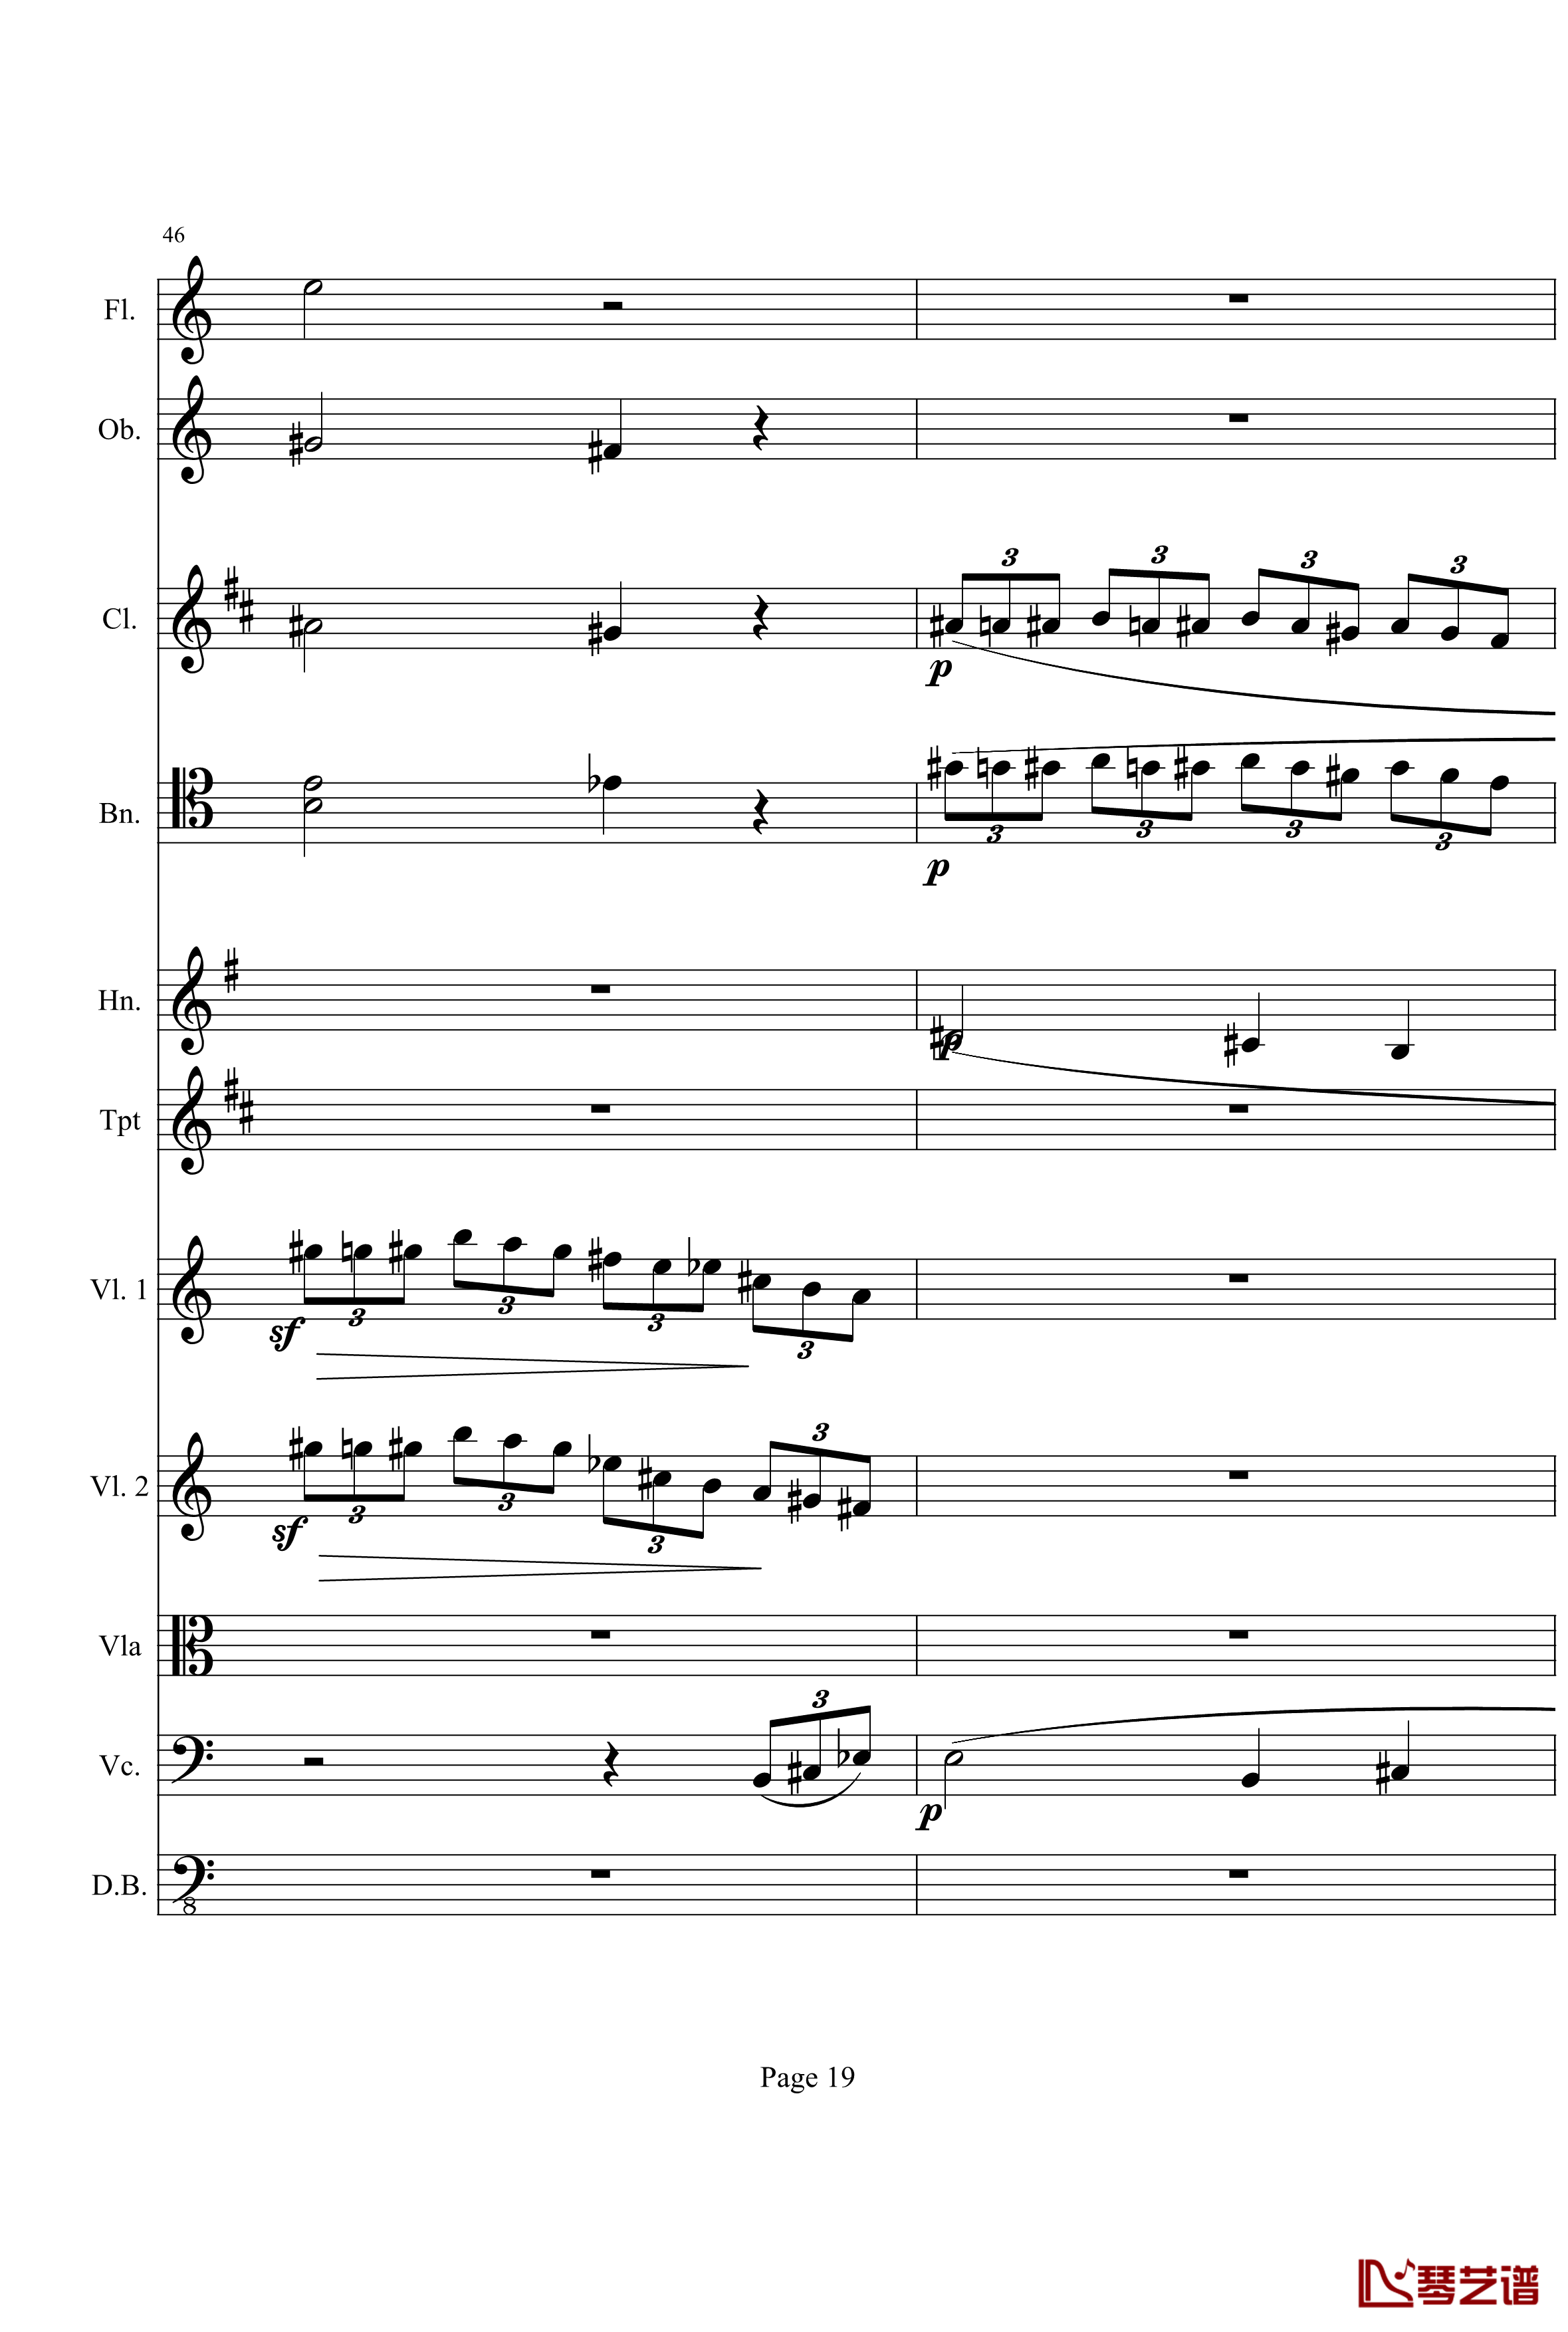 奏鸣曲之交响钢琴谱-第21首-Ⅰ-贝多芬-beethoven19